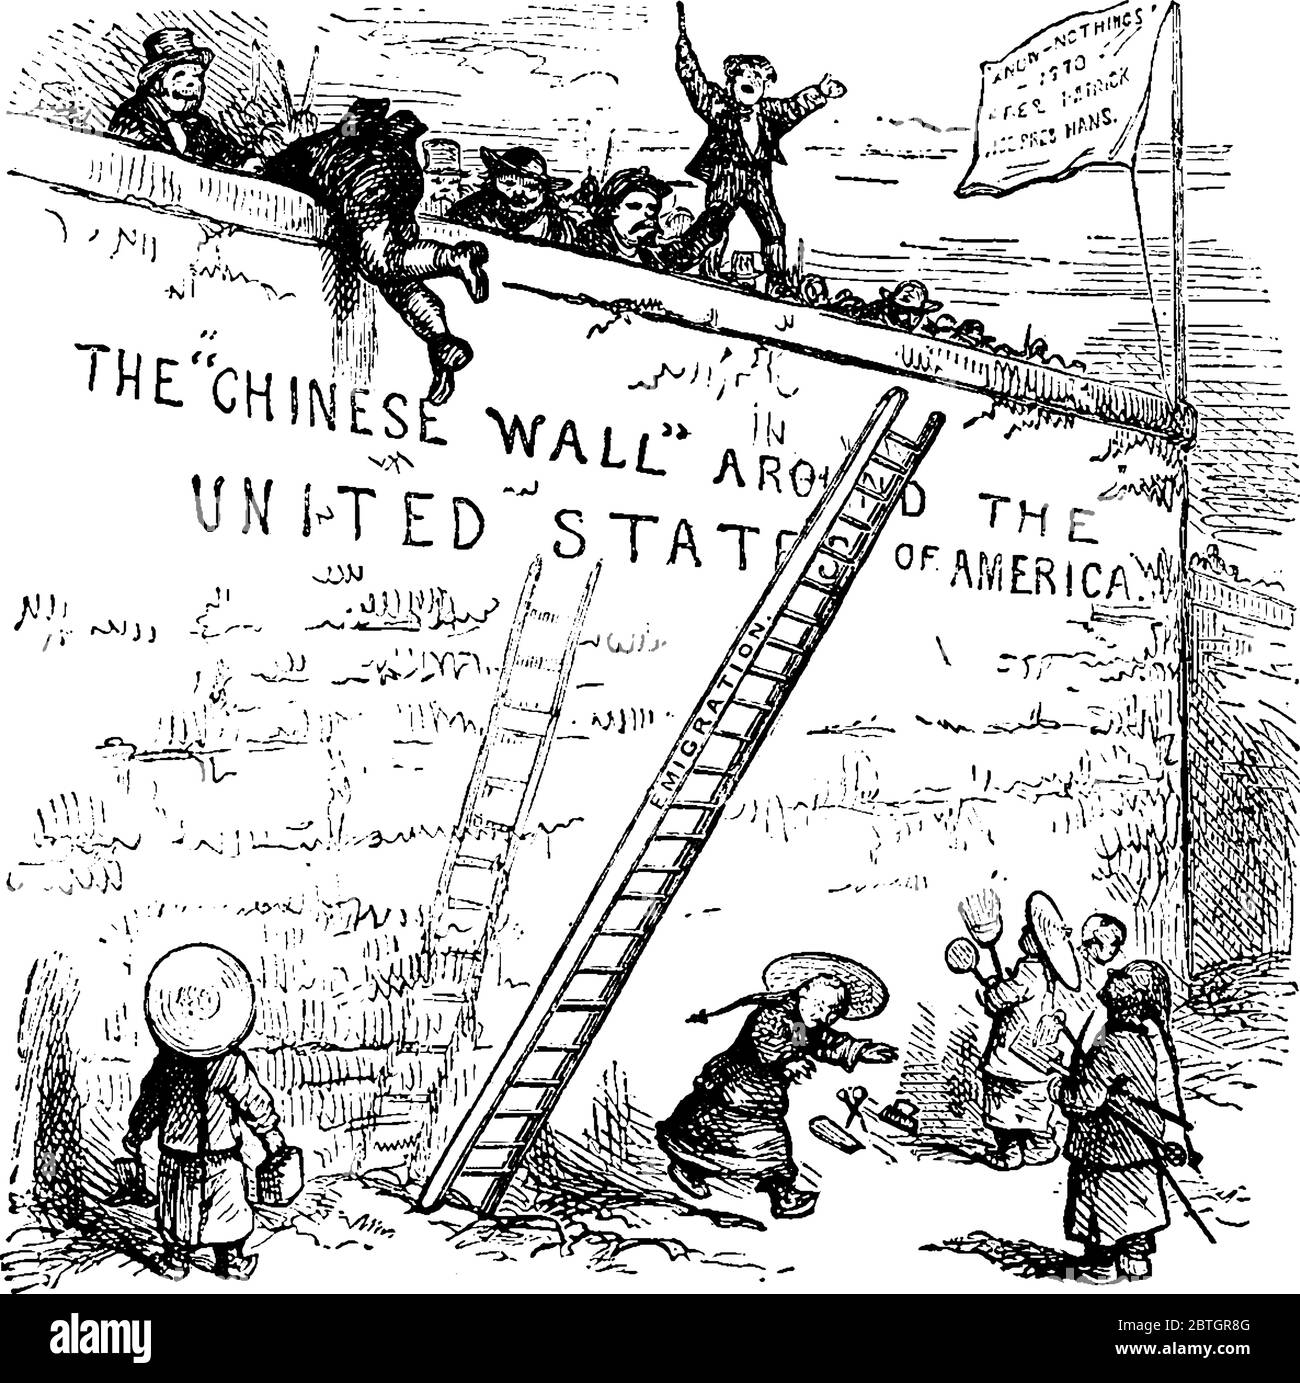 Diese einfache Cartoon-Show werfen von Leiter aus der chinesischen Mauer der Vereinigten Staaten, was bedeutet, dass keine chinesischen Einwanderer in Amerika erlaubt sind., vi Stock Vektor